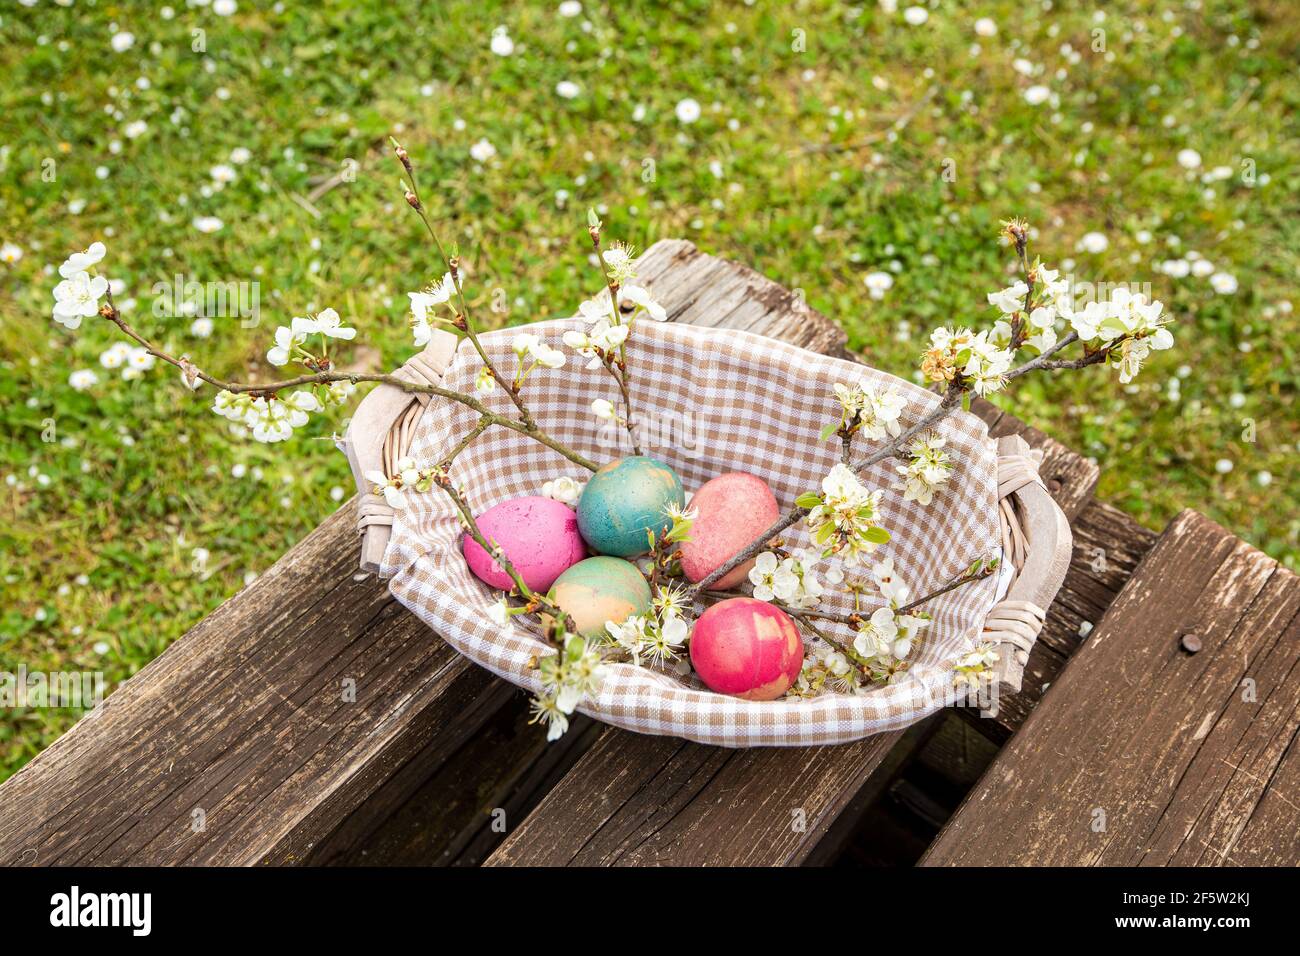 Frühling und Osterkonzept. Ein Weidenkorb gefüllt mit naturfarbenen Eiern und Pflaumenblütenzweigen auf einem Holztisch. Ein Garten voller Gänseblümchen Stockfoto